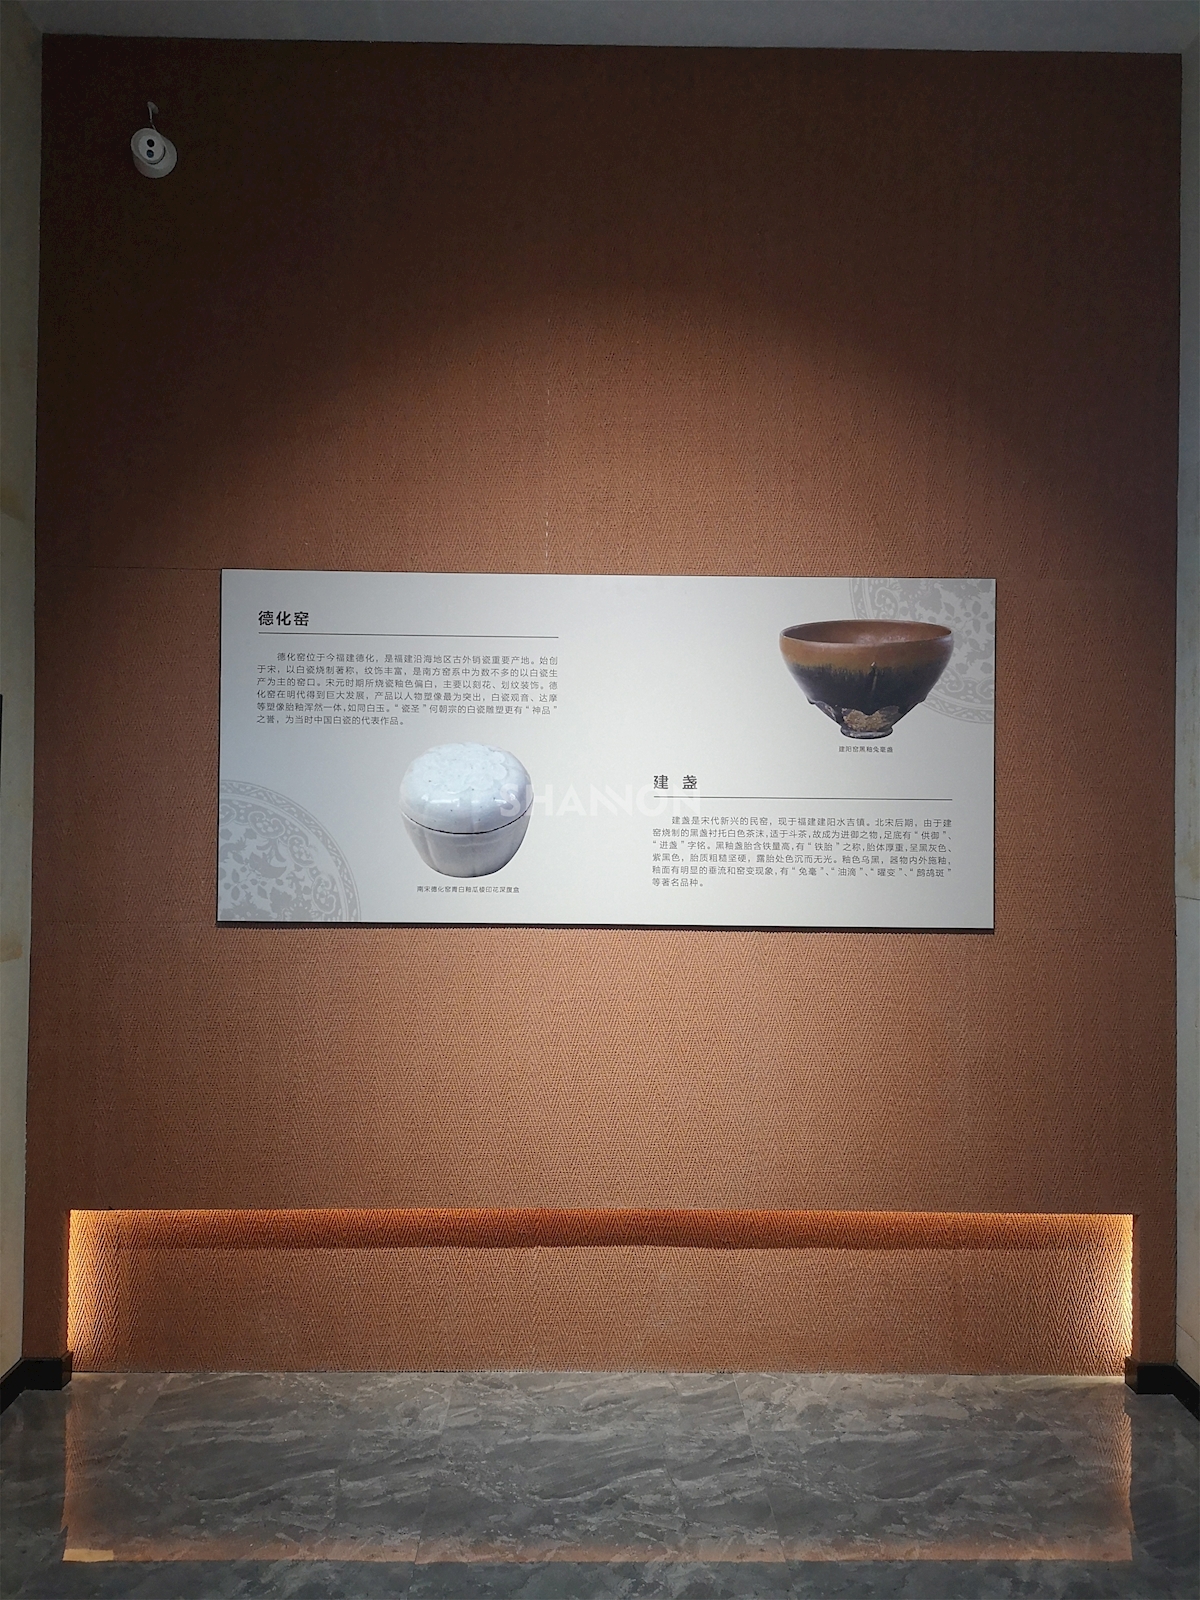 03 内-黑龙江齐齐哈尔市陶瓷博物馆 (2)